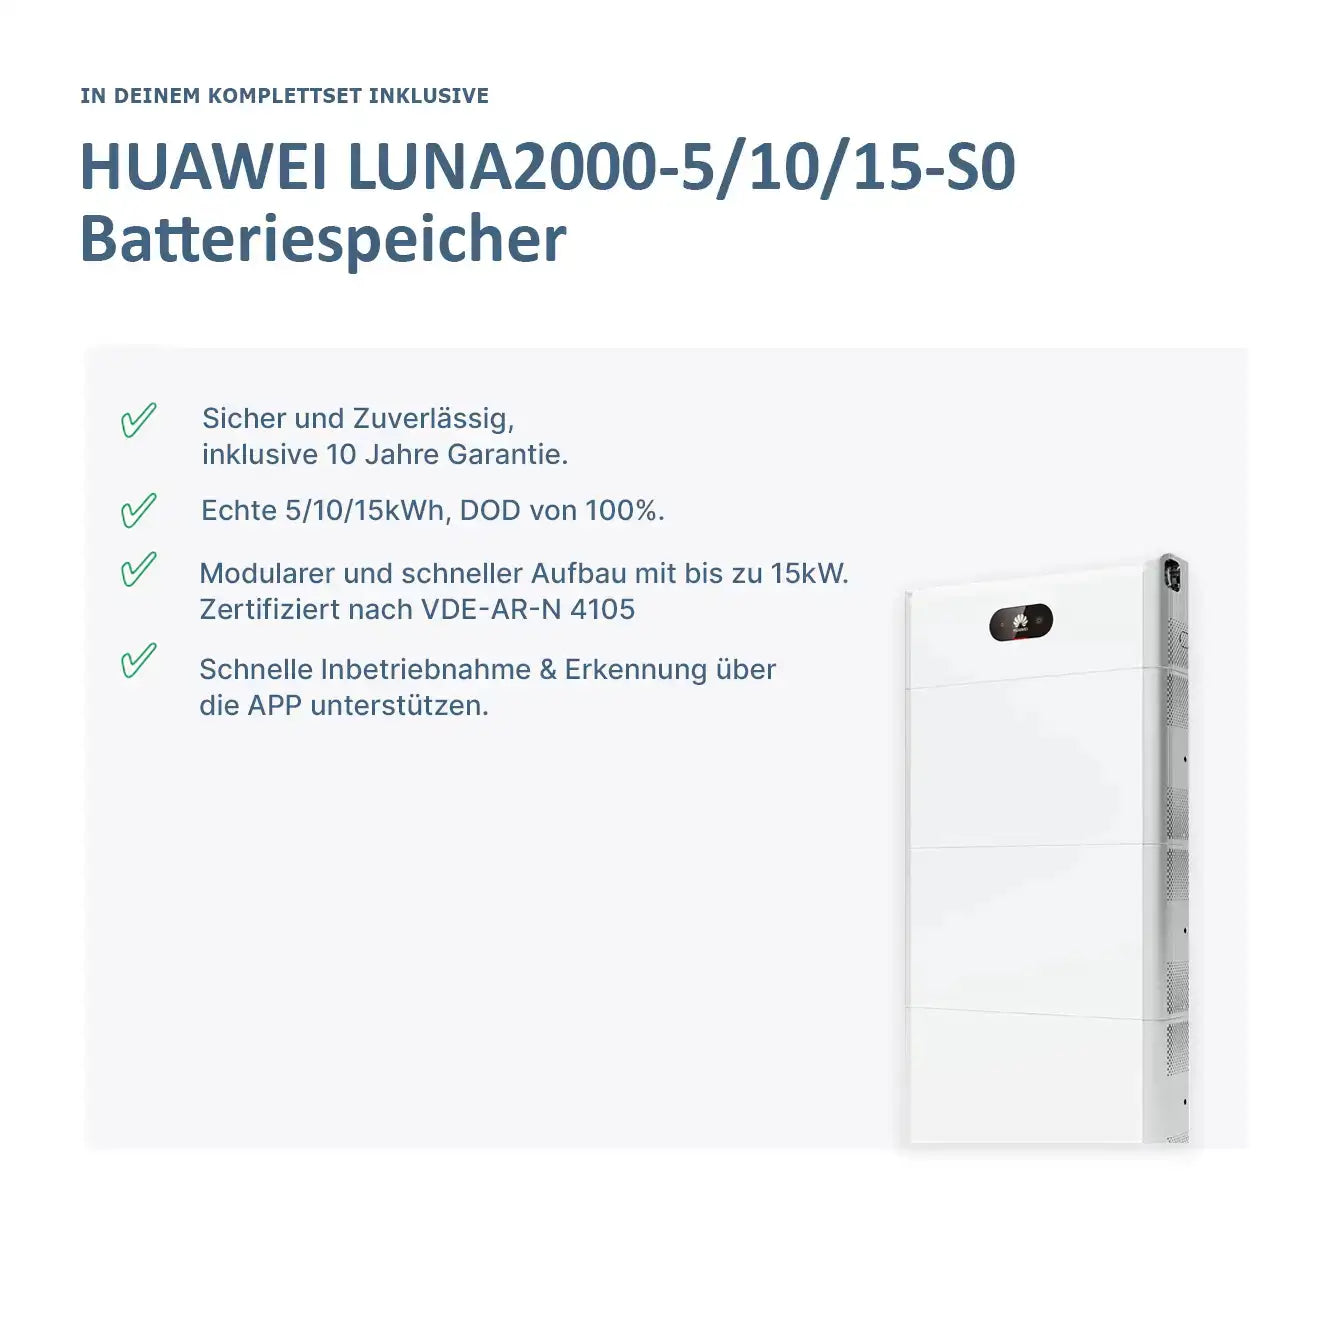 Huawei LUNA Speicher Komplettset